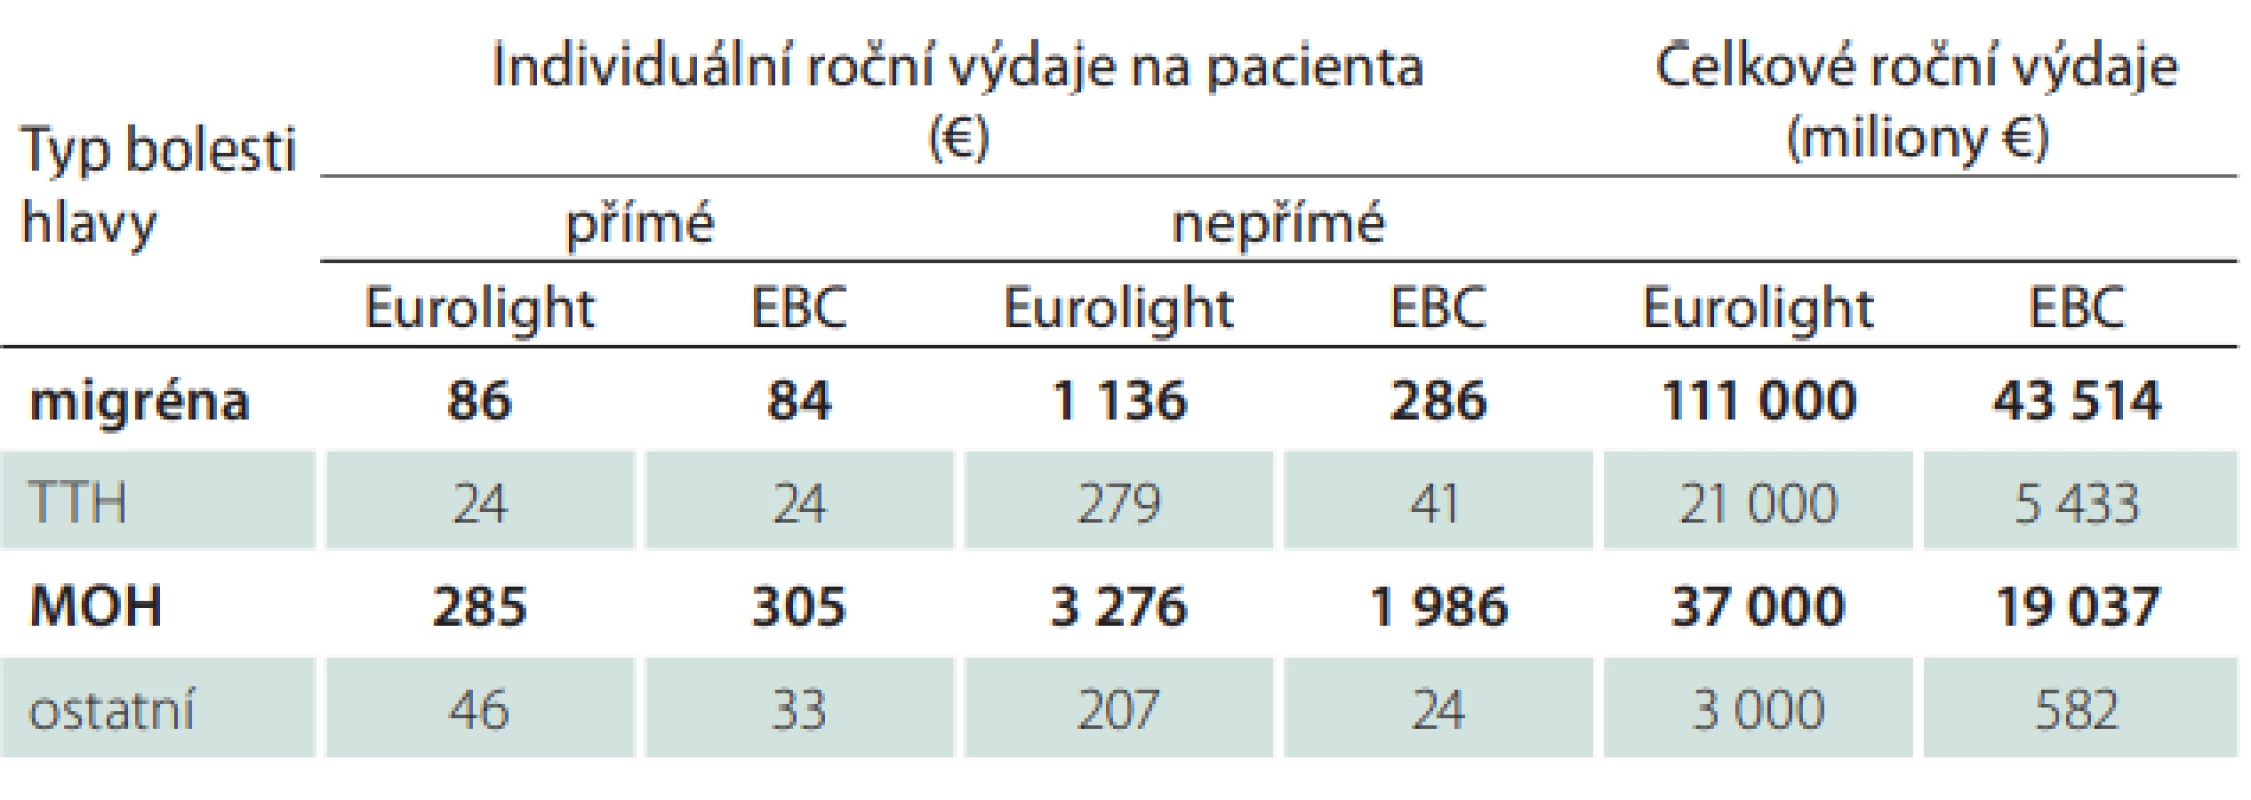  Odhady ročních výdajů na léčbu bolestí hlavy – srovnání výsledků projektu
Eurolight [21] a EBC [22]; upraveno podle [19]. Diagnózou s největšími individuálními výdaji na pacienta je MOH, nejvyšší celkové roční výdaje jsou za pacienty s migrénou. Příčiny rozdílných výsledků projektu Eurolight a studie EBC jsou uvedeny
v textu.